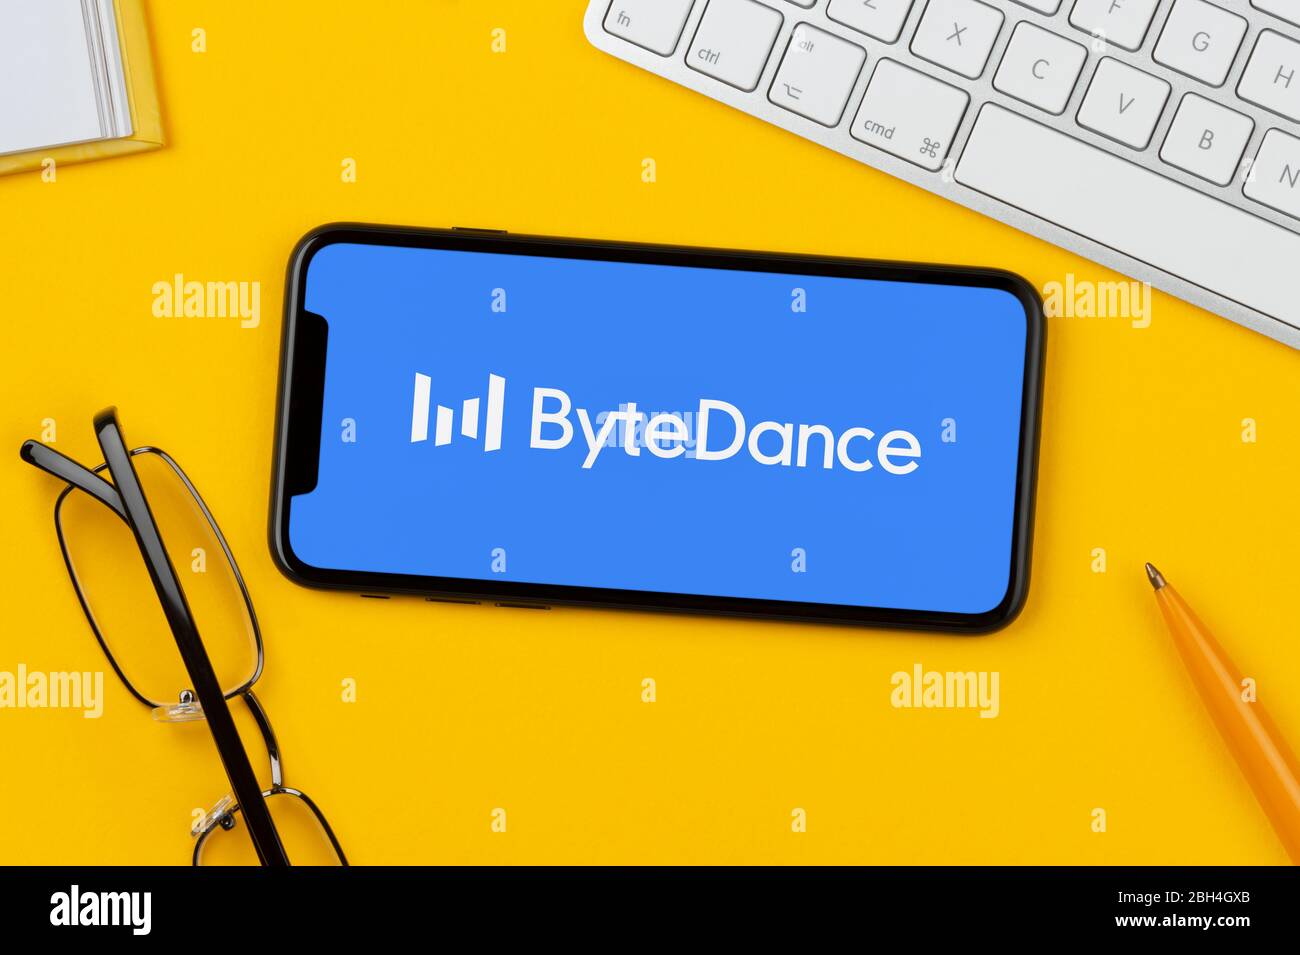 Ein Smartphone mit dem Bytedance-Logo liegt auf einem gelben Hintergrund zusammen mit Tastatur, Brille, Stift und Buch (nur für redaktionelle Verwendung). Stockfoto